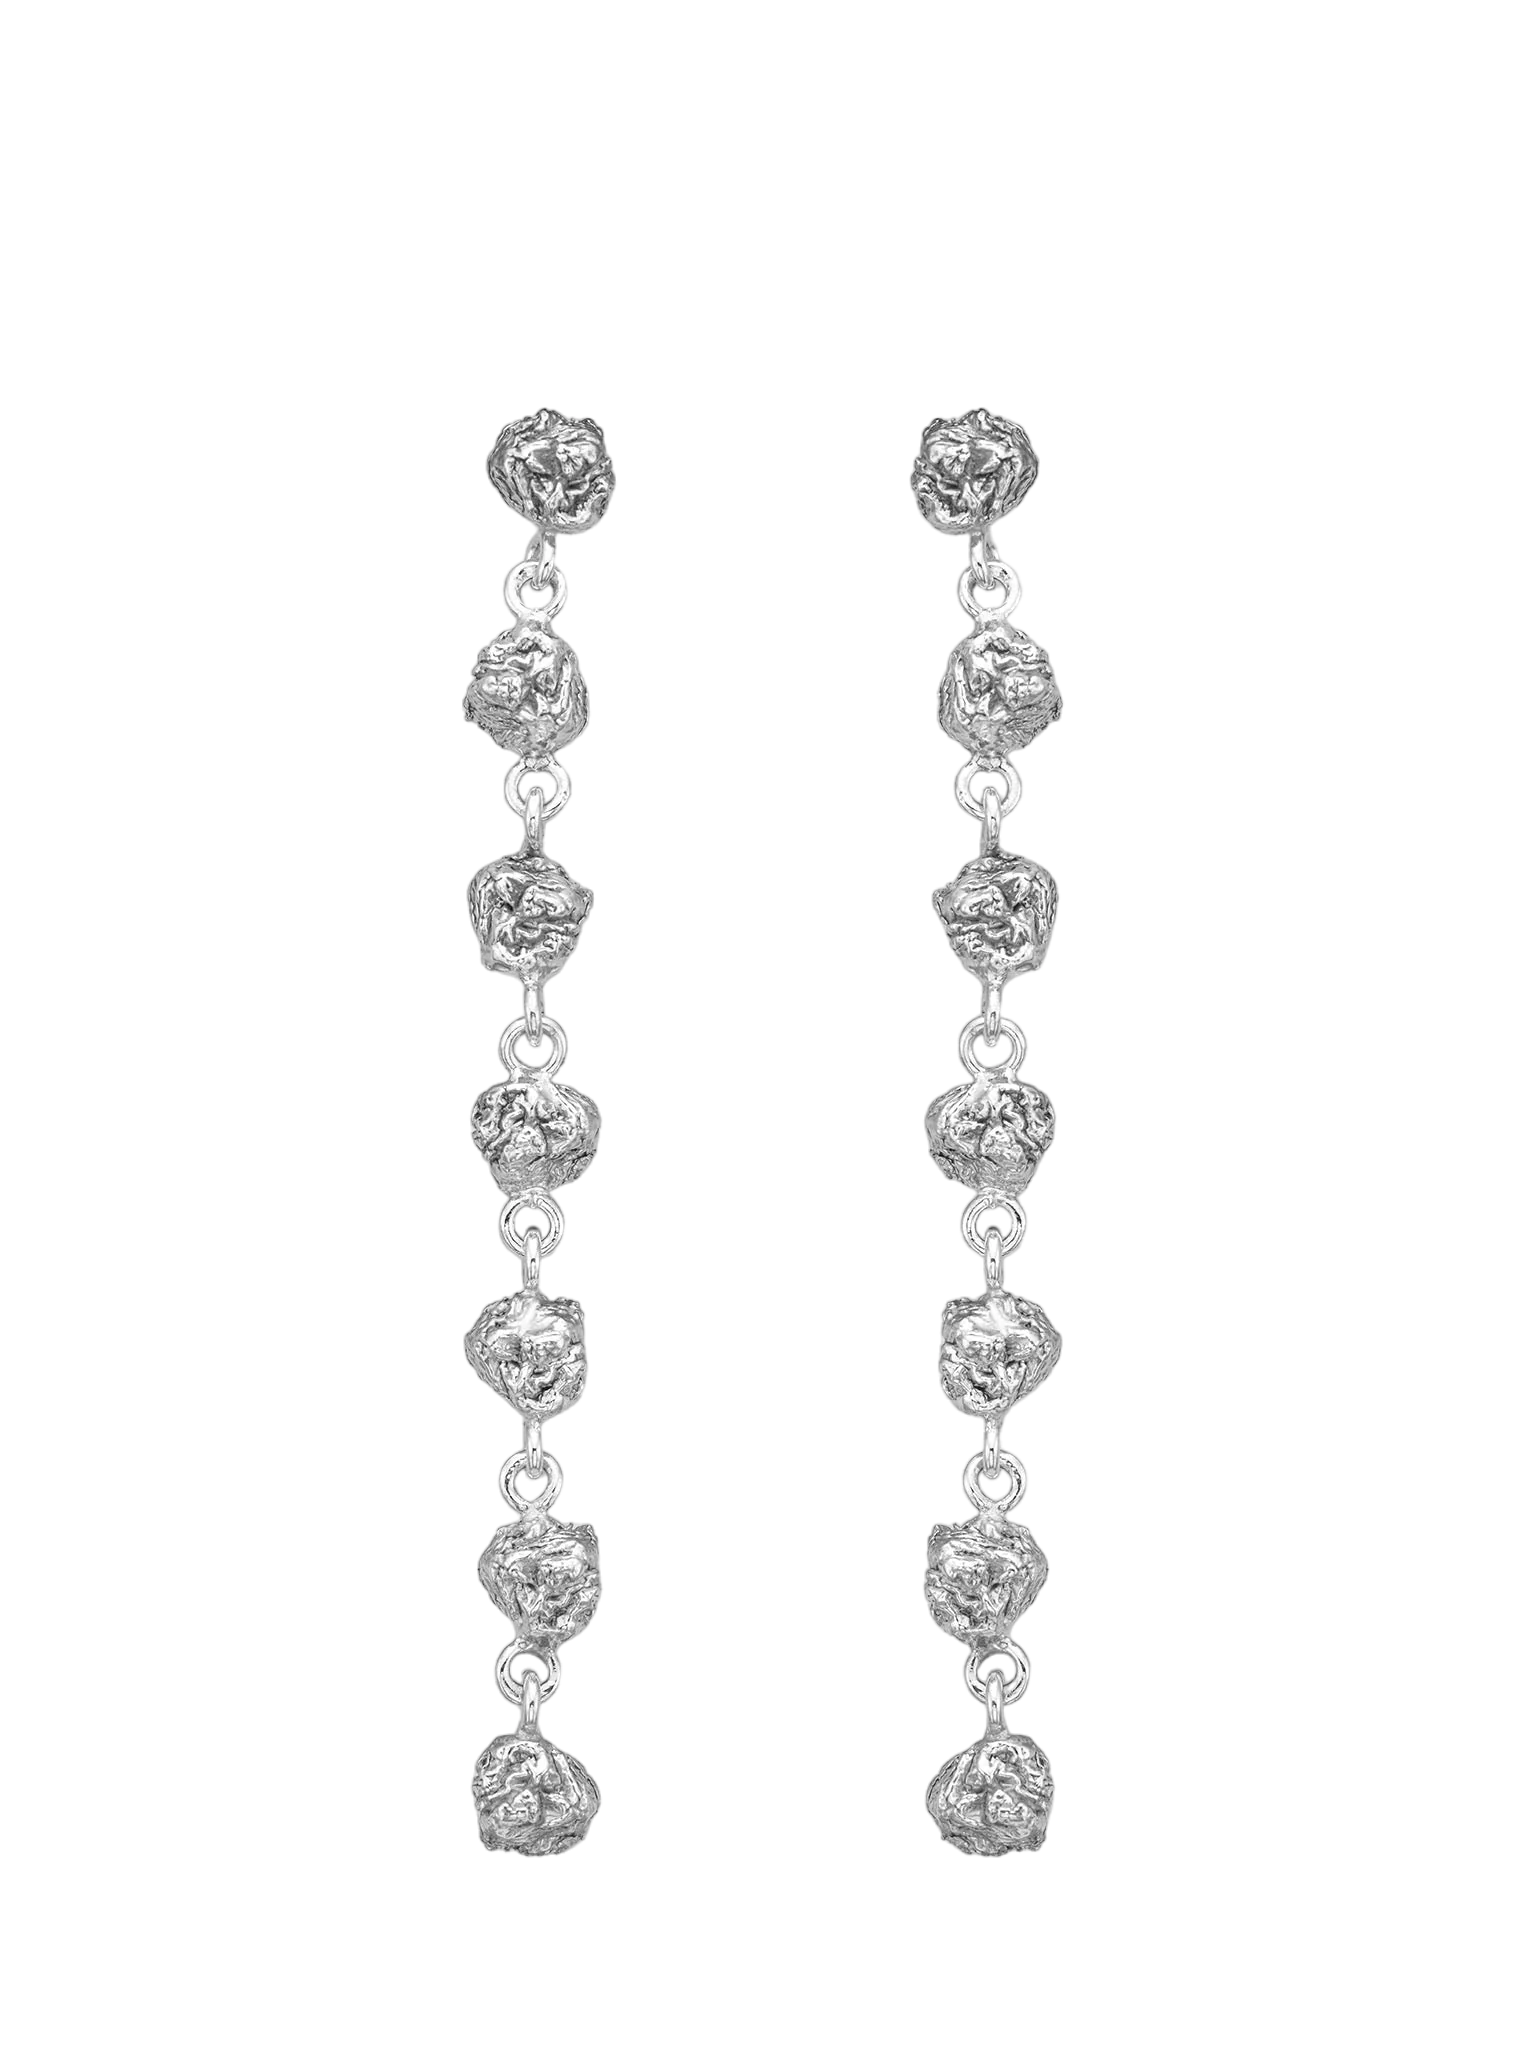 Archaic long earrings silver